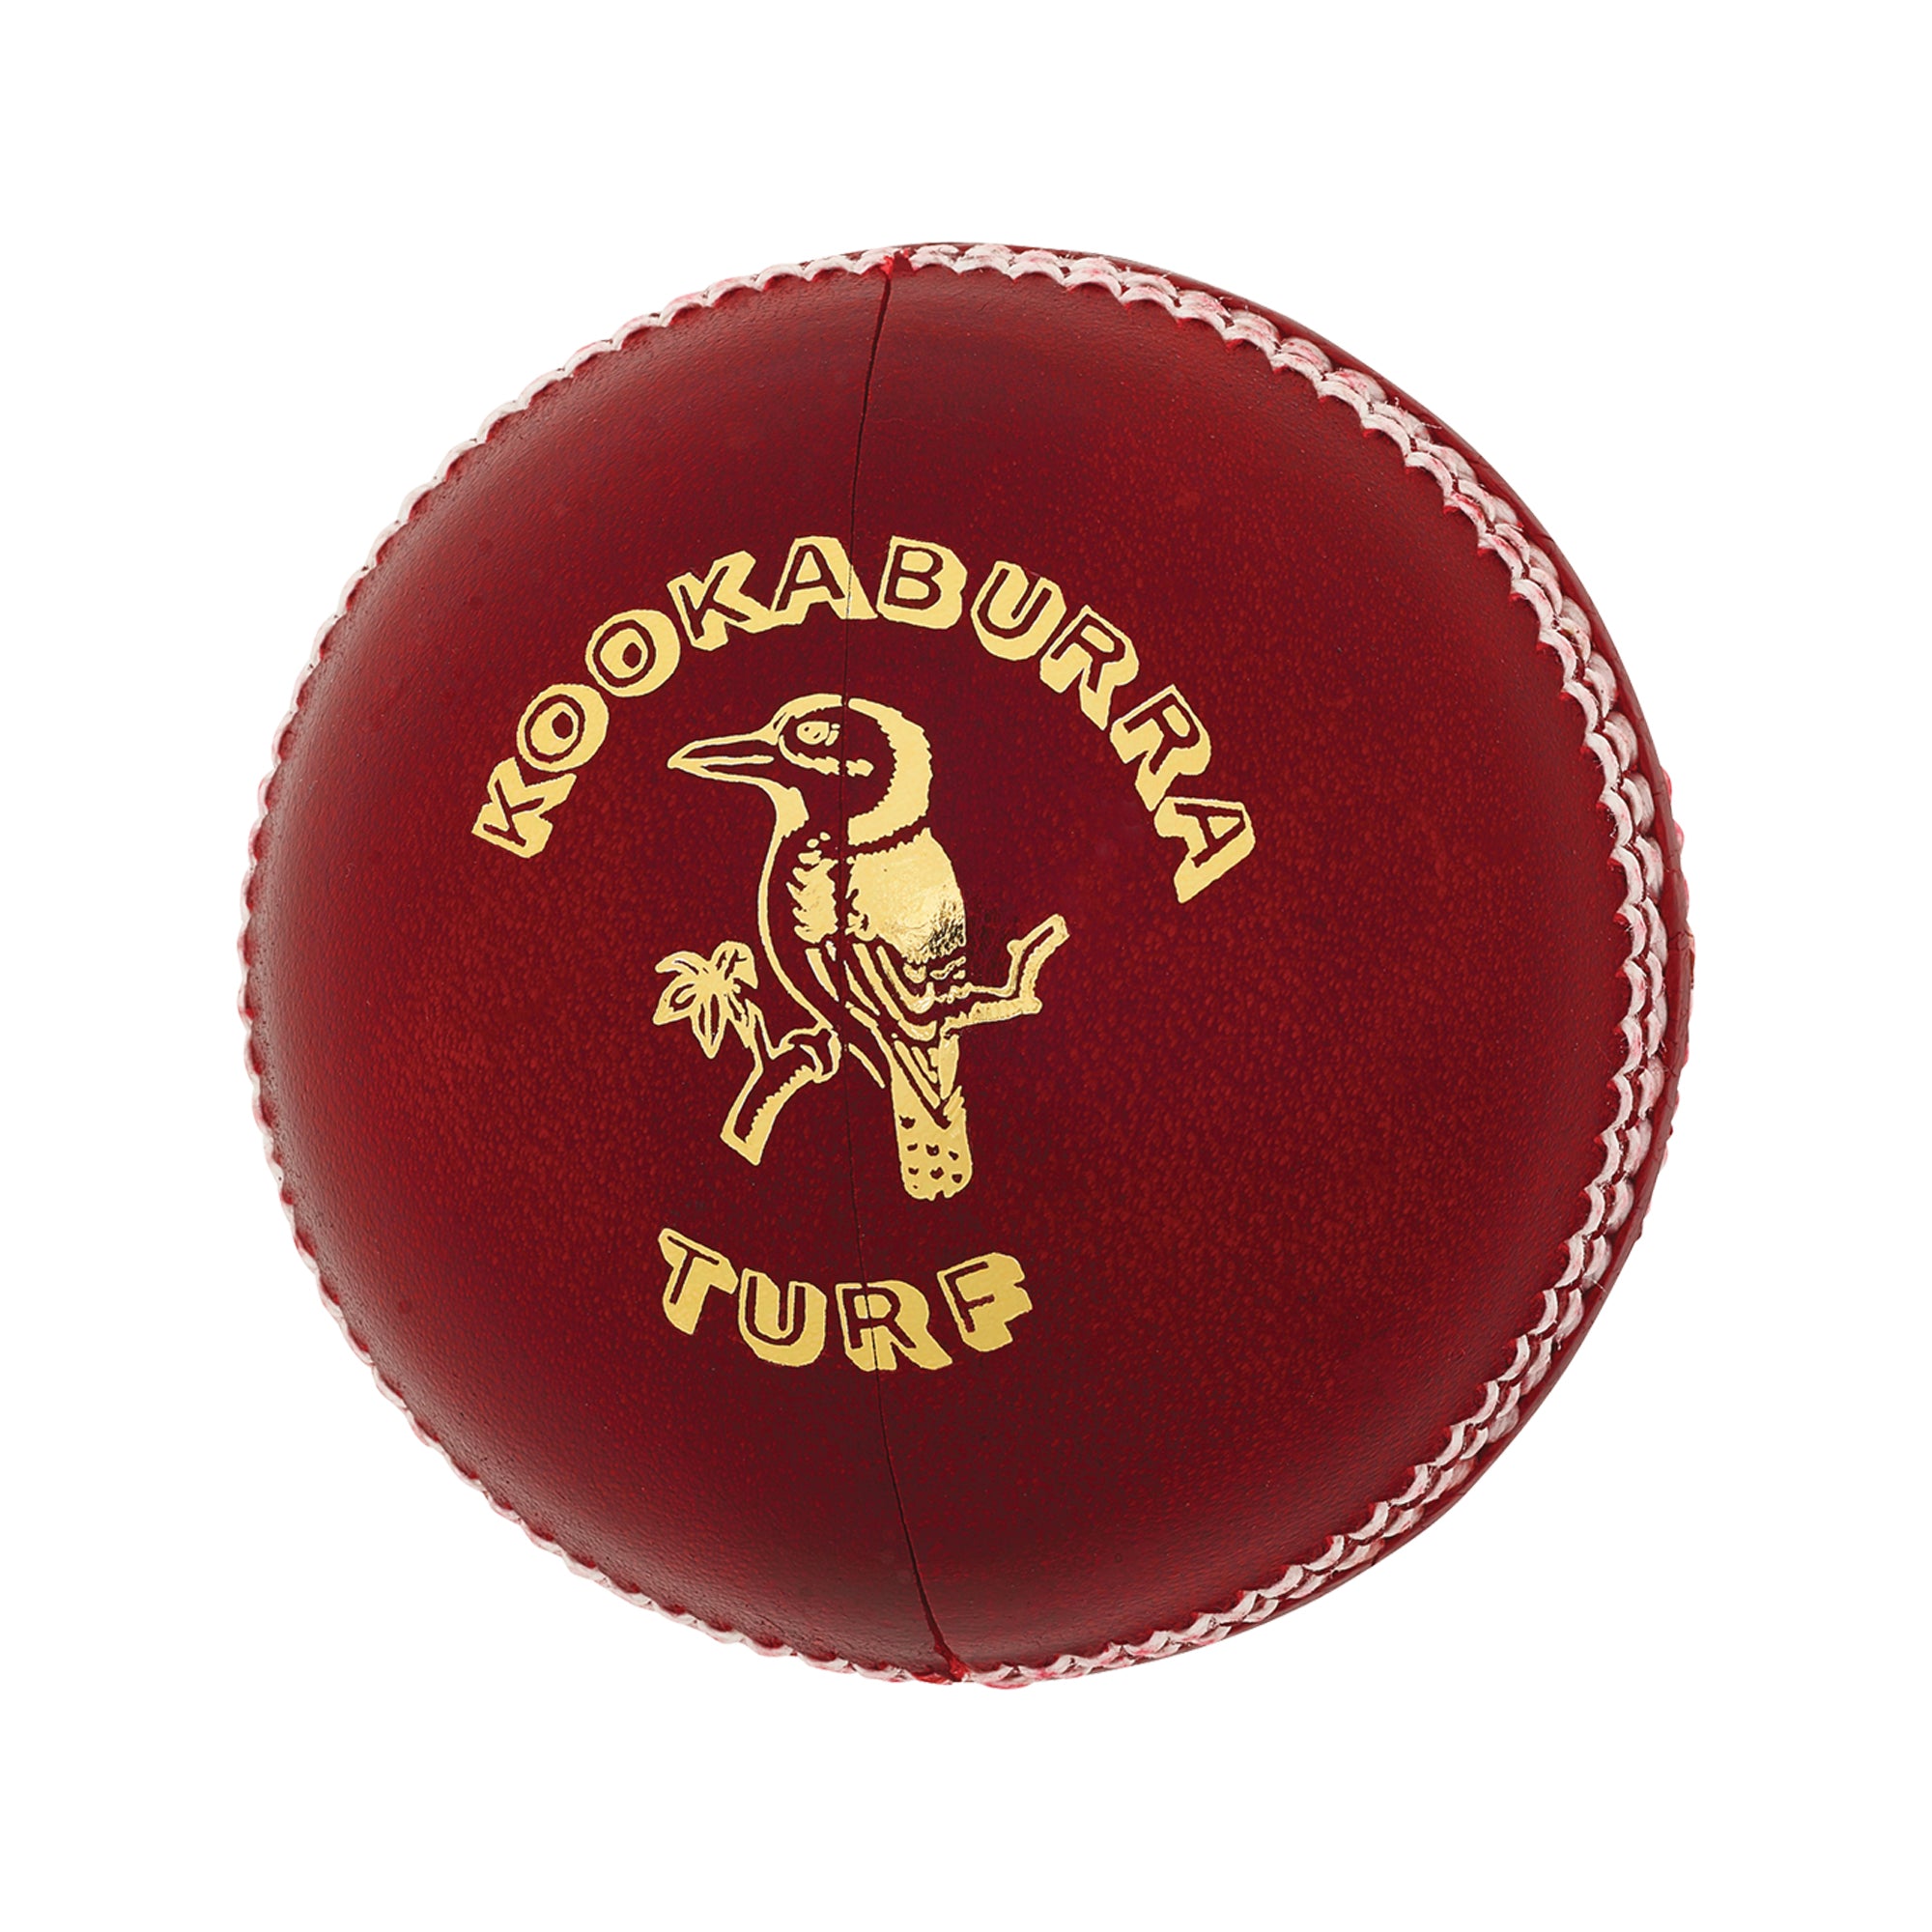 Kookaburra Turf 4 Peace Red Cricket Ball